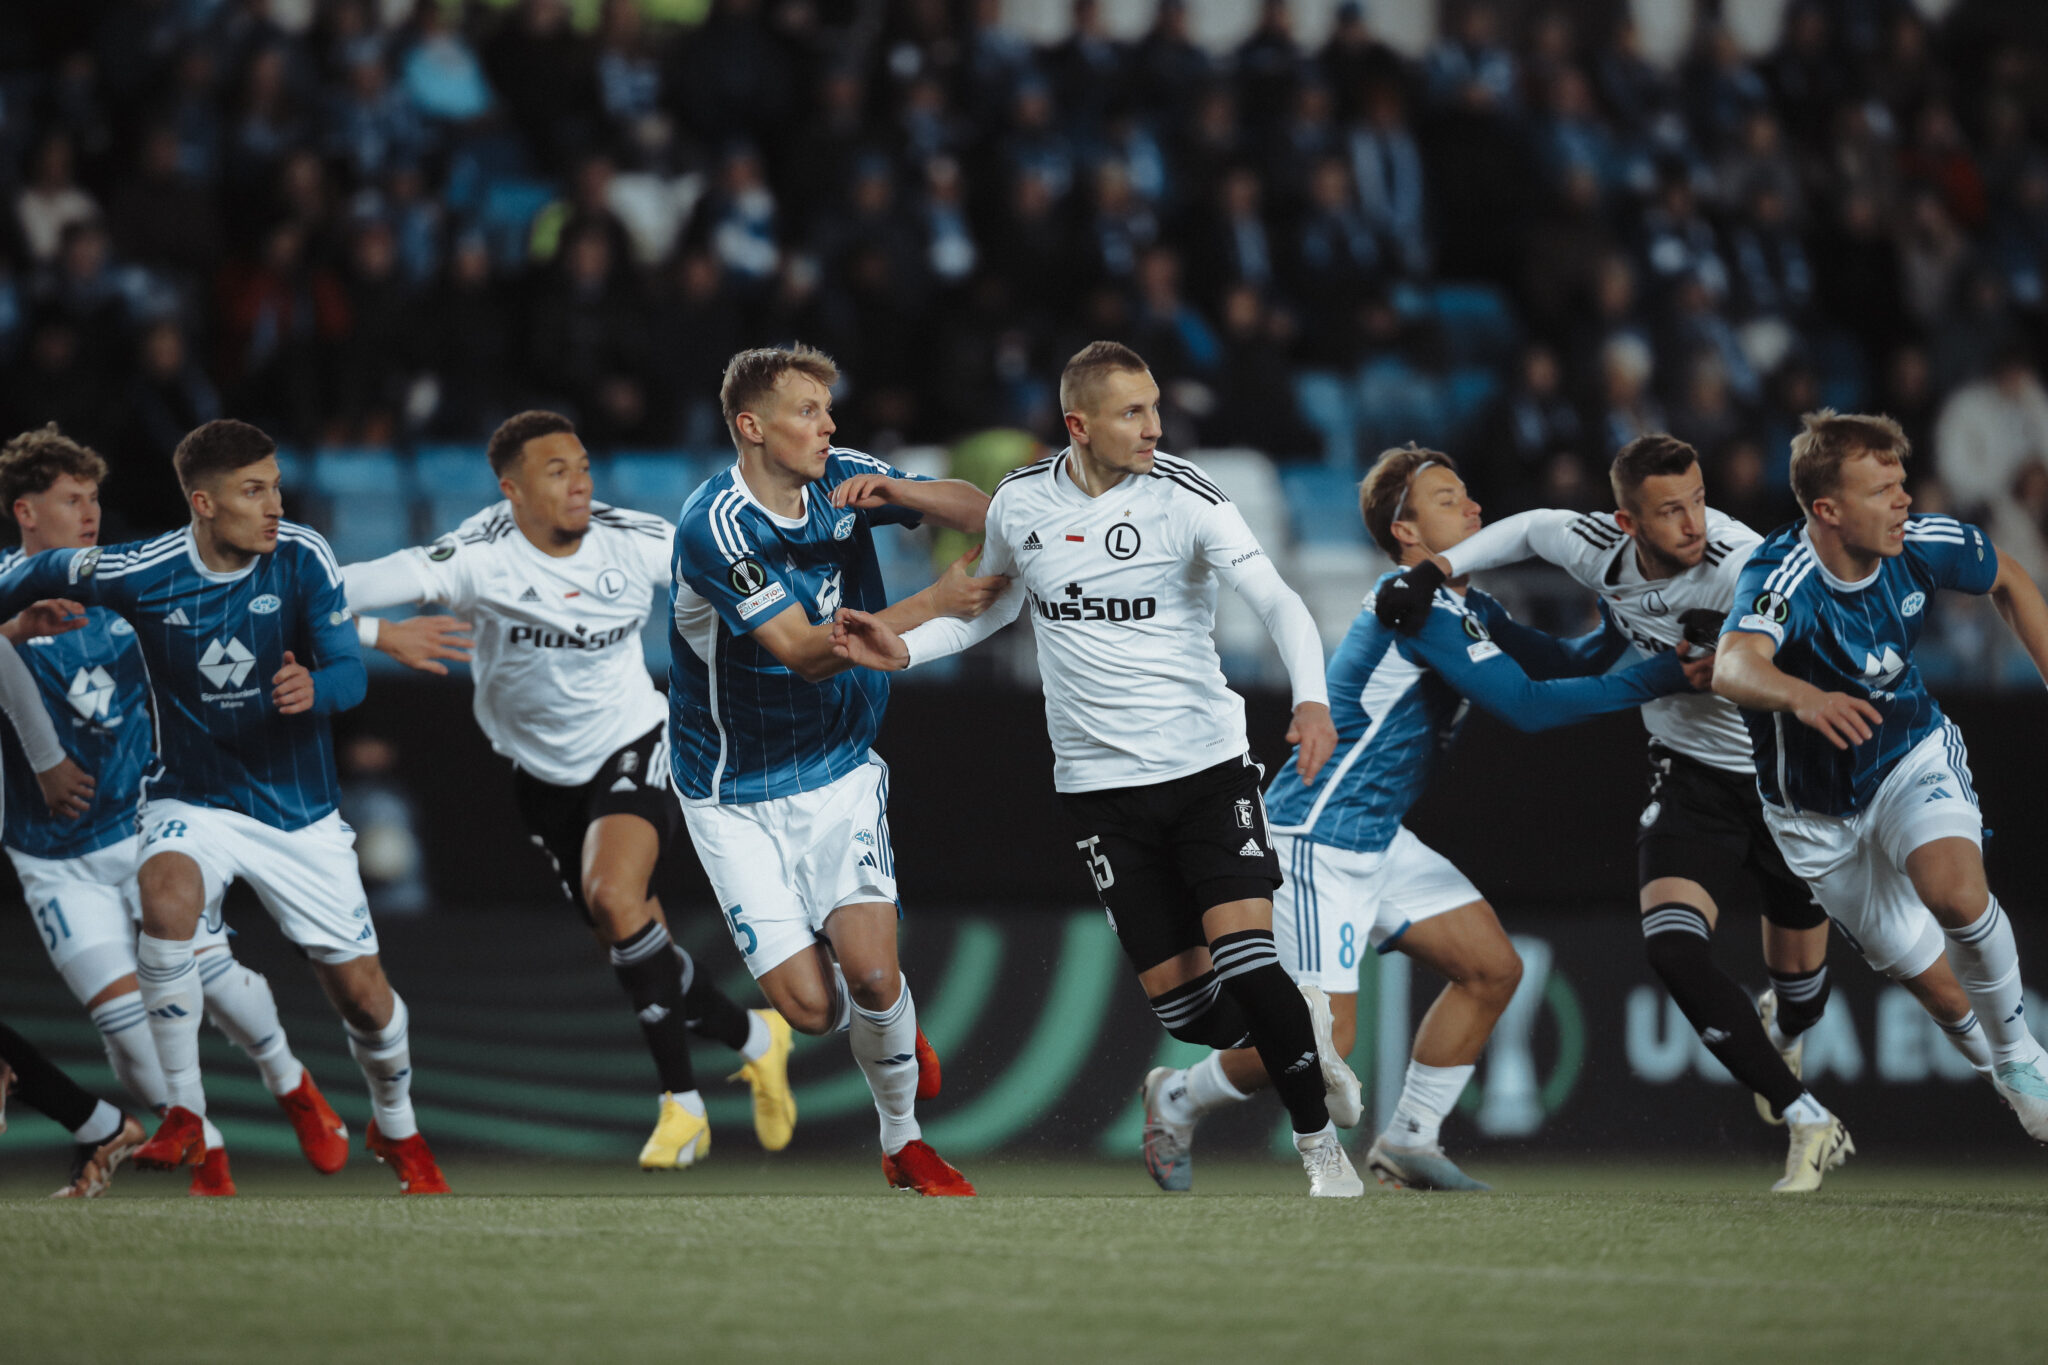 Legia zagra z Molde FK o awans! Wszystkie mecze 1/16 finału Ligi Europy i Ligi Konferencji Europy do obejrzenia w Viaplay